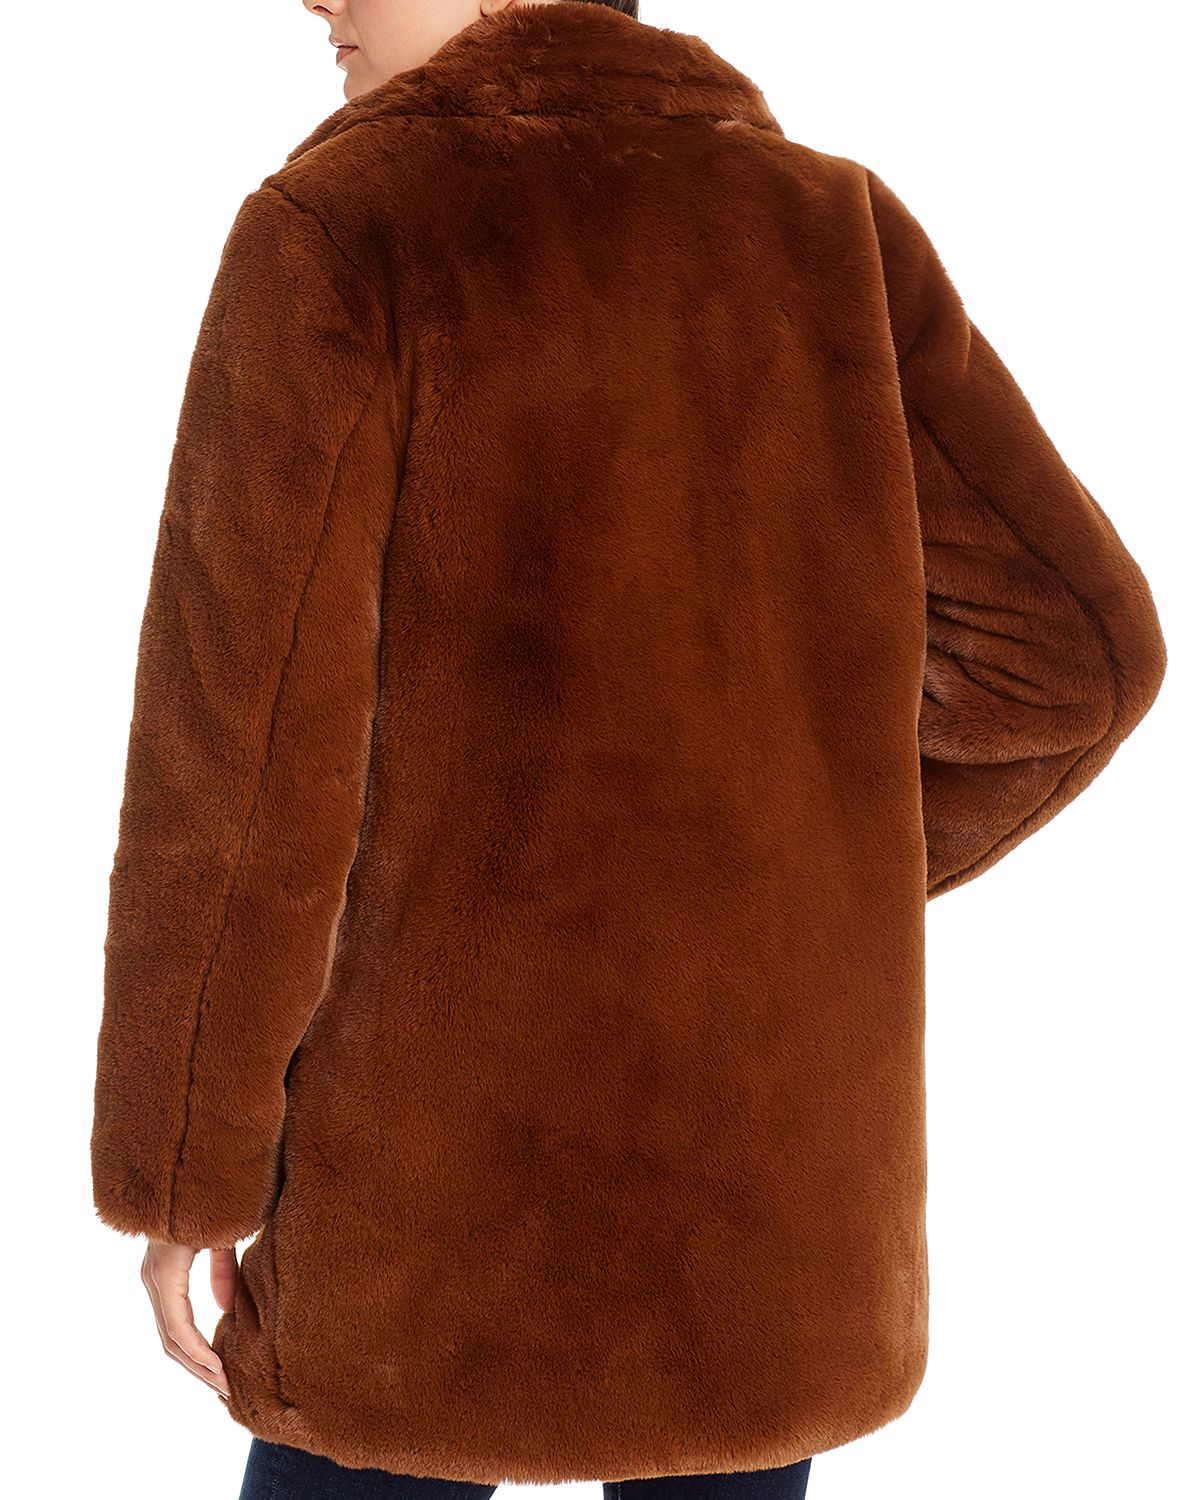 woocommerce-673321-2209615.cloudwaysapps.com-apparis-womens-brown-faux-fur-sophie-coat-jacket